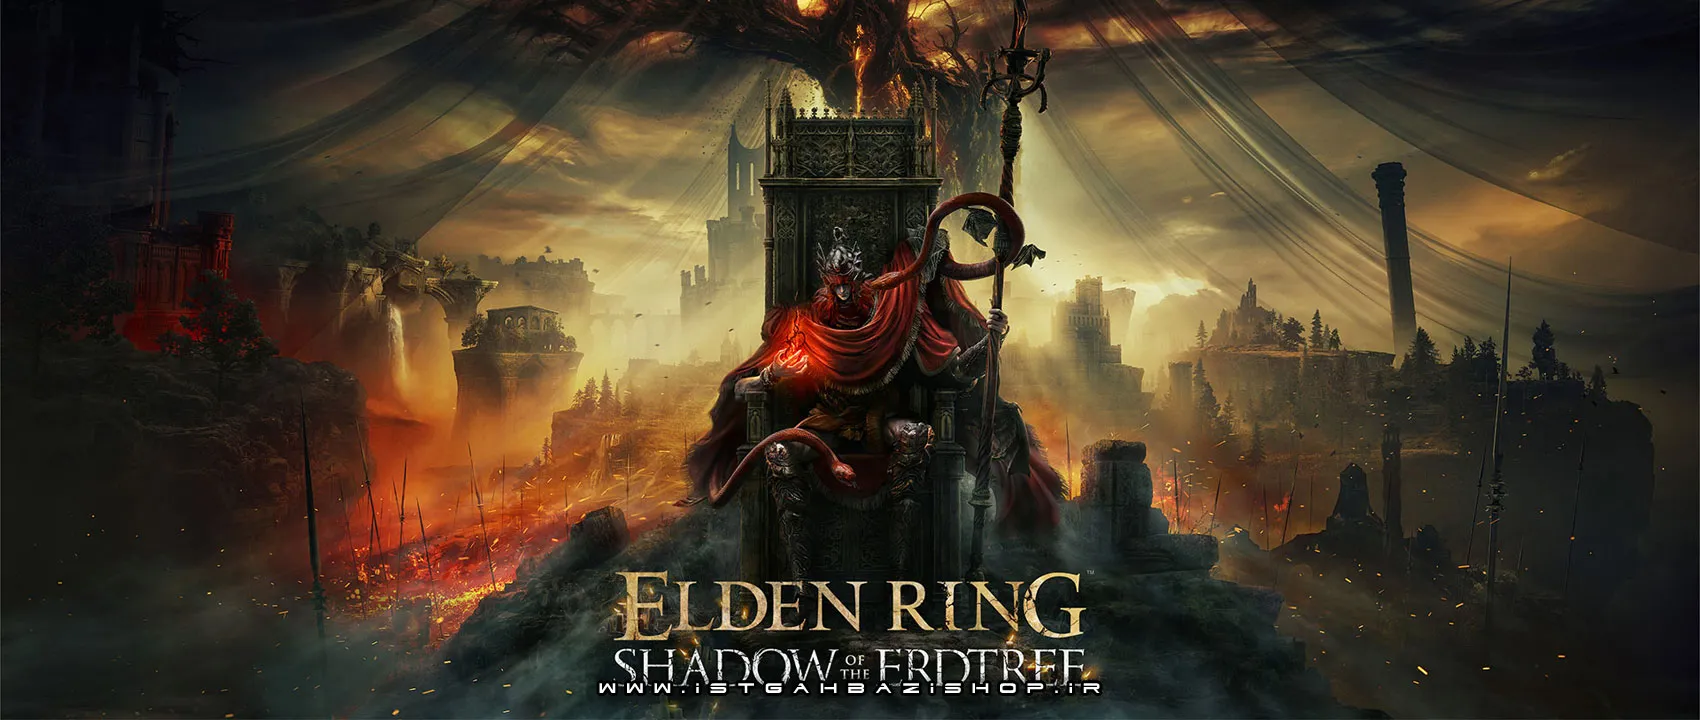 Elden Ring Shadow of the Erdtree Ps5